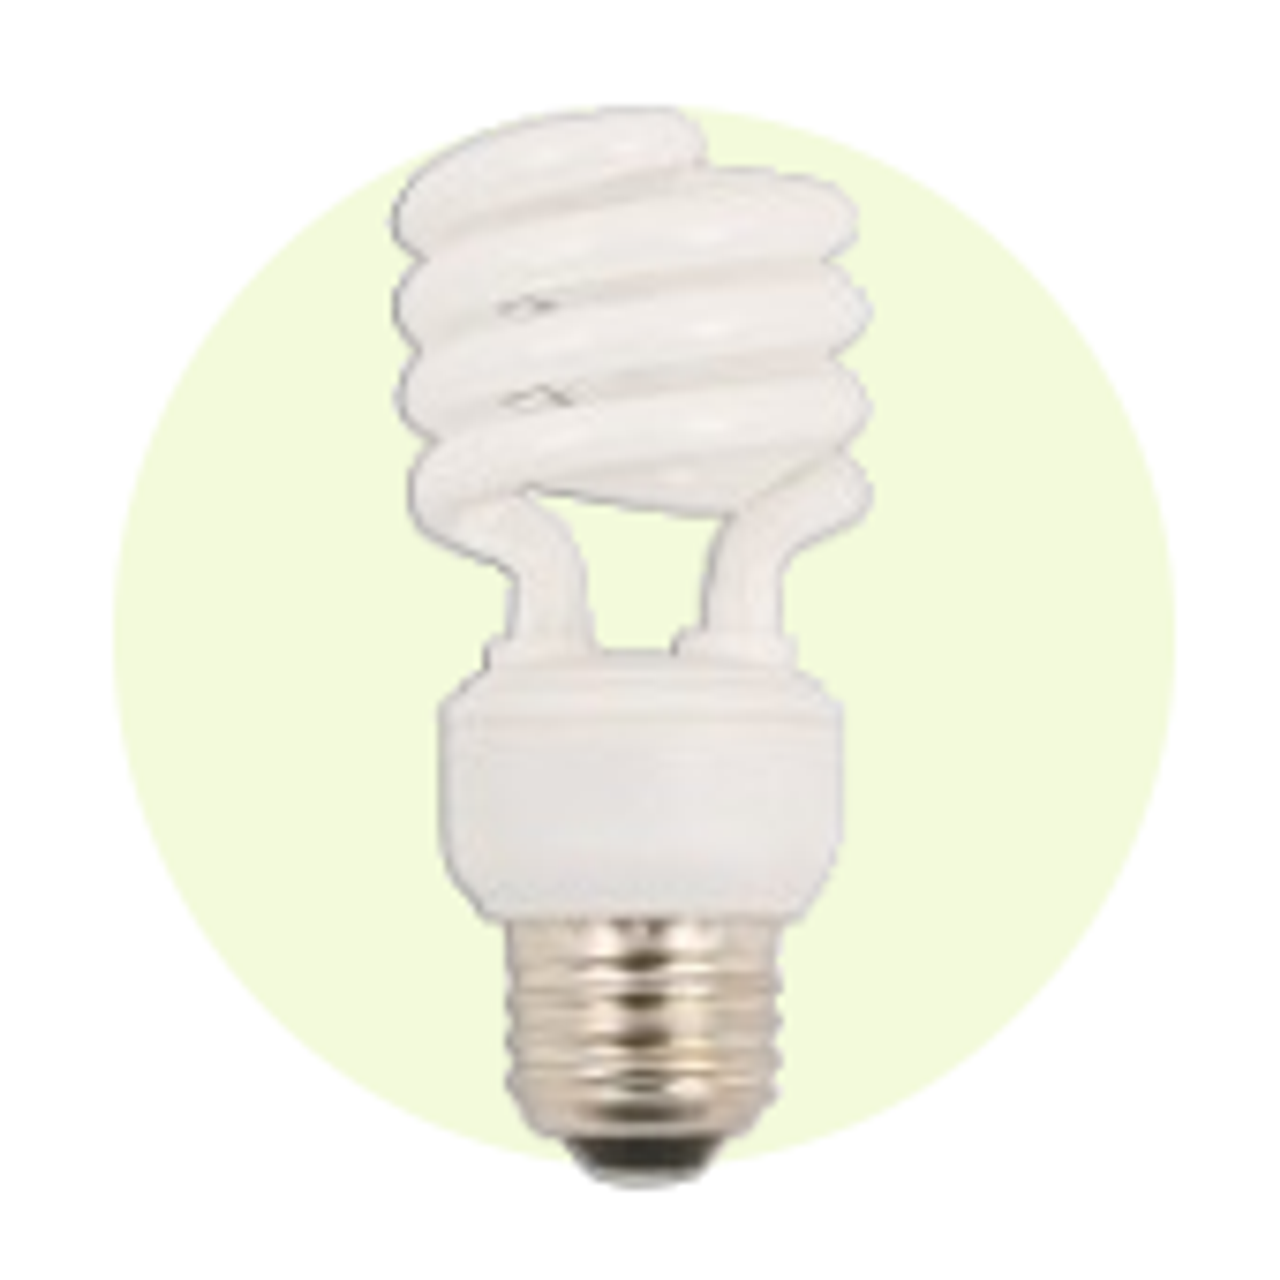 Medium Base Spiral CFL Lamps